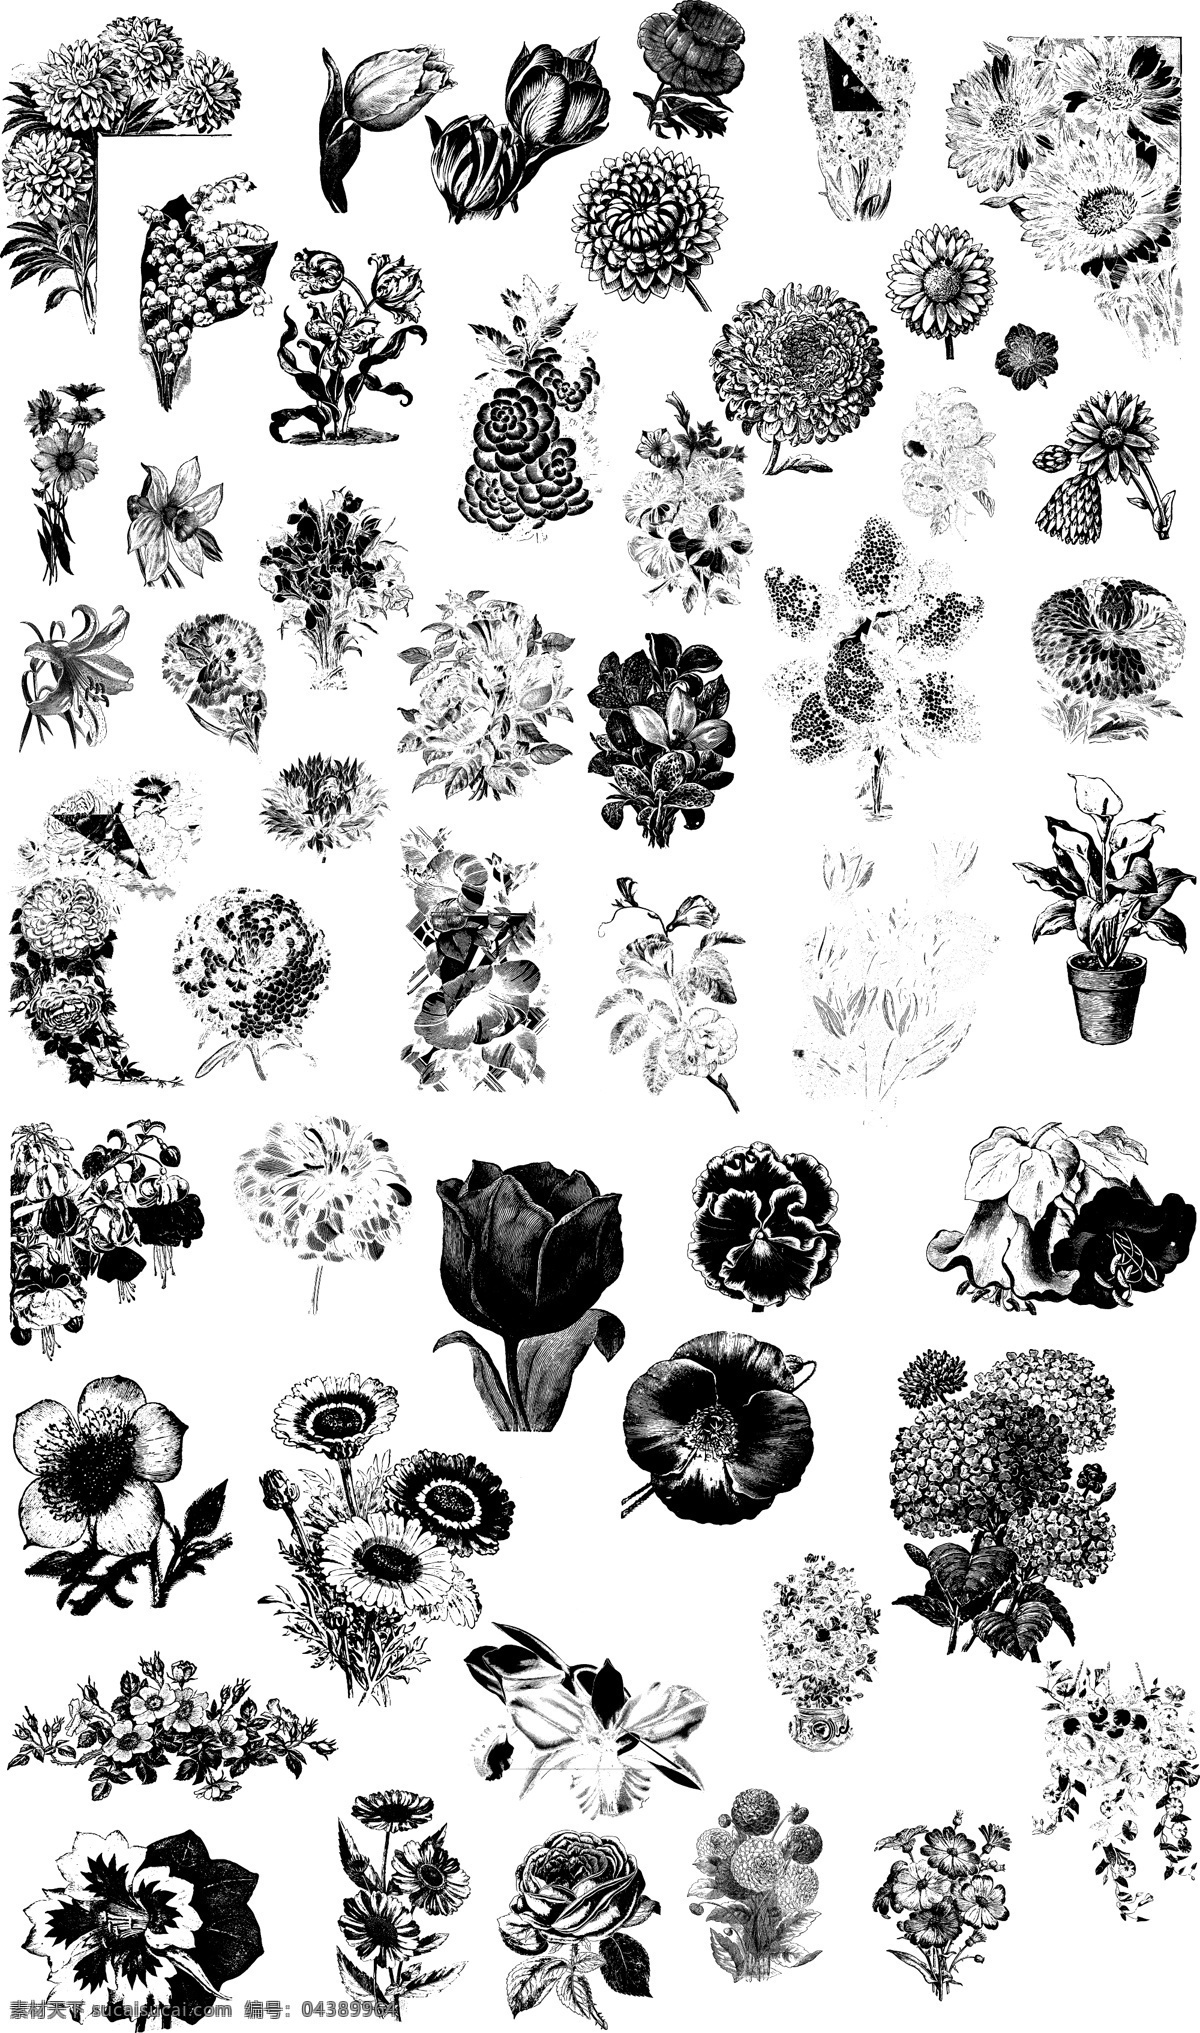 黑白 手绘 各种 花朵 插画 植物 菊花 郁金香 唯美